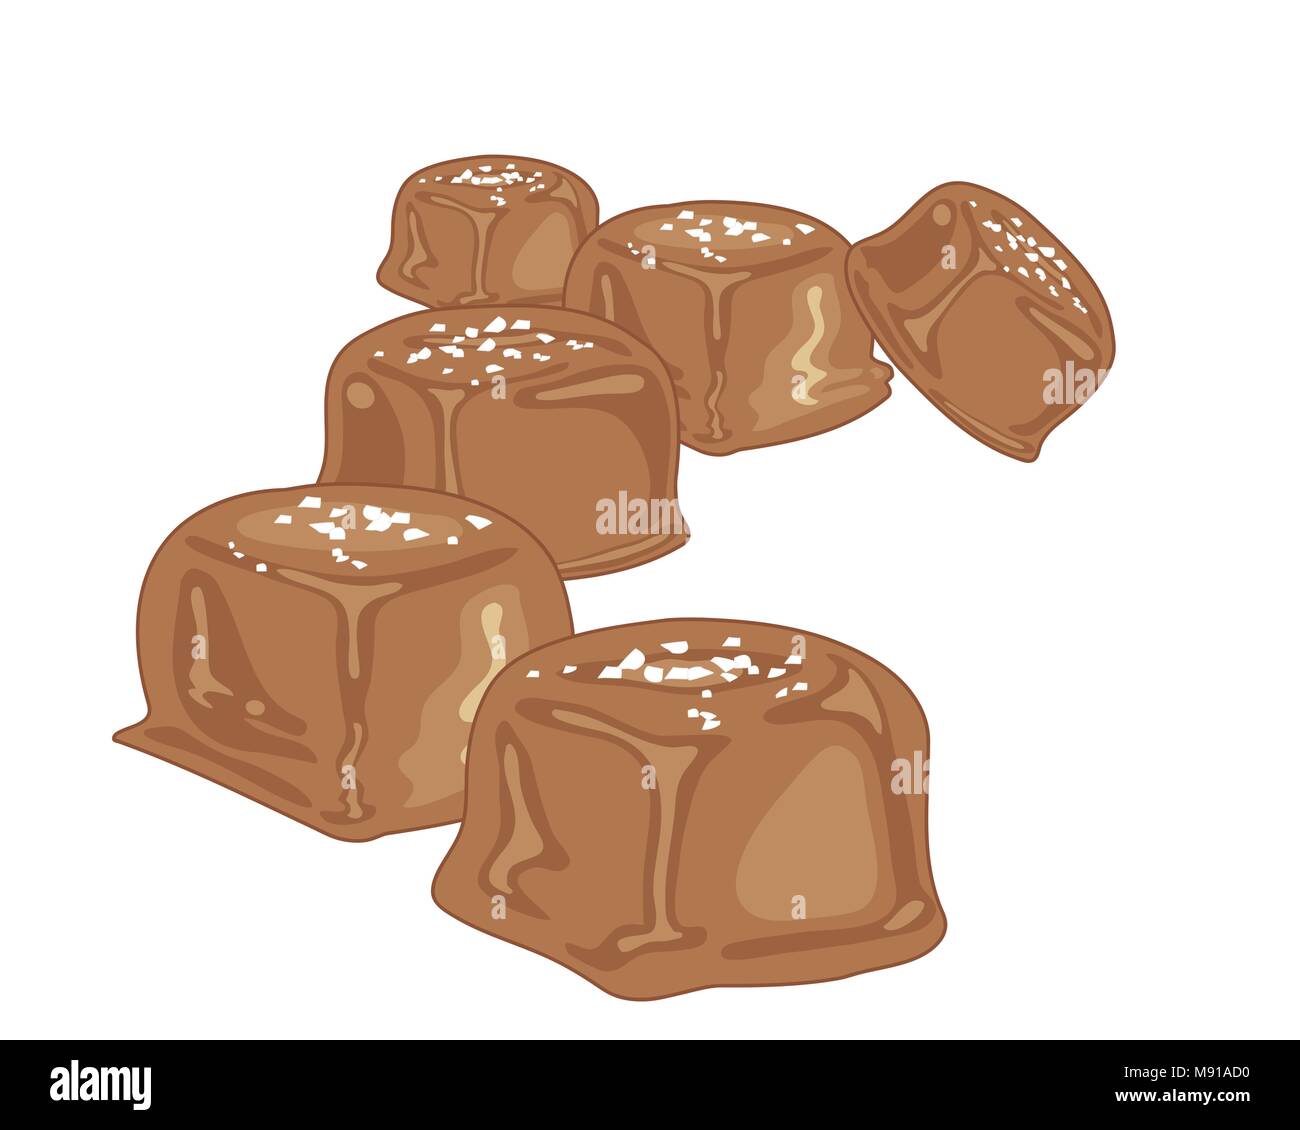 Un vecteur illustration au format eps de morceaux de bonbons au caramel avec un enrobage de chocolat et une pincée de sel de mer sur un fond blanc Illustration de Vecteur